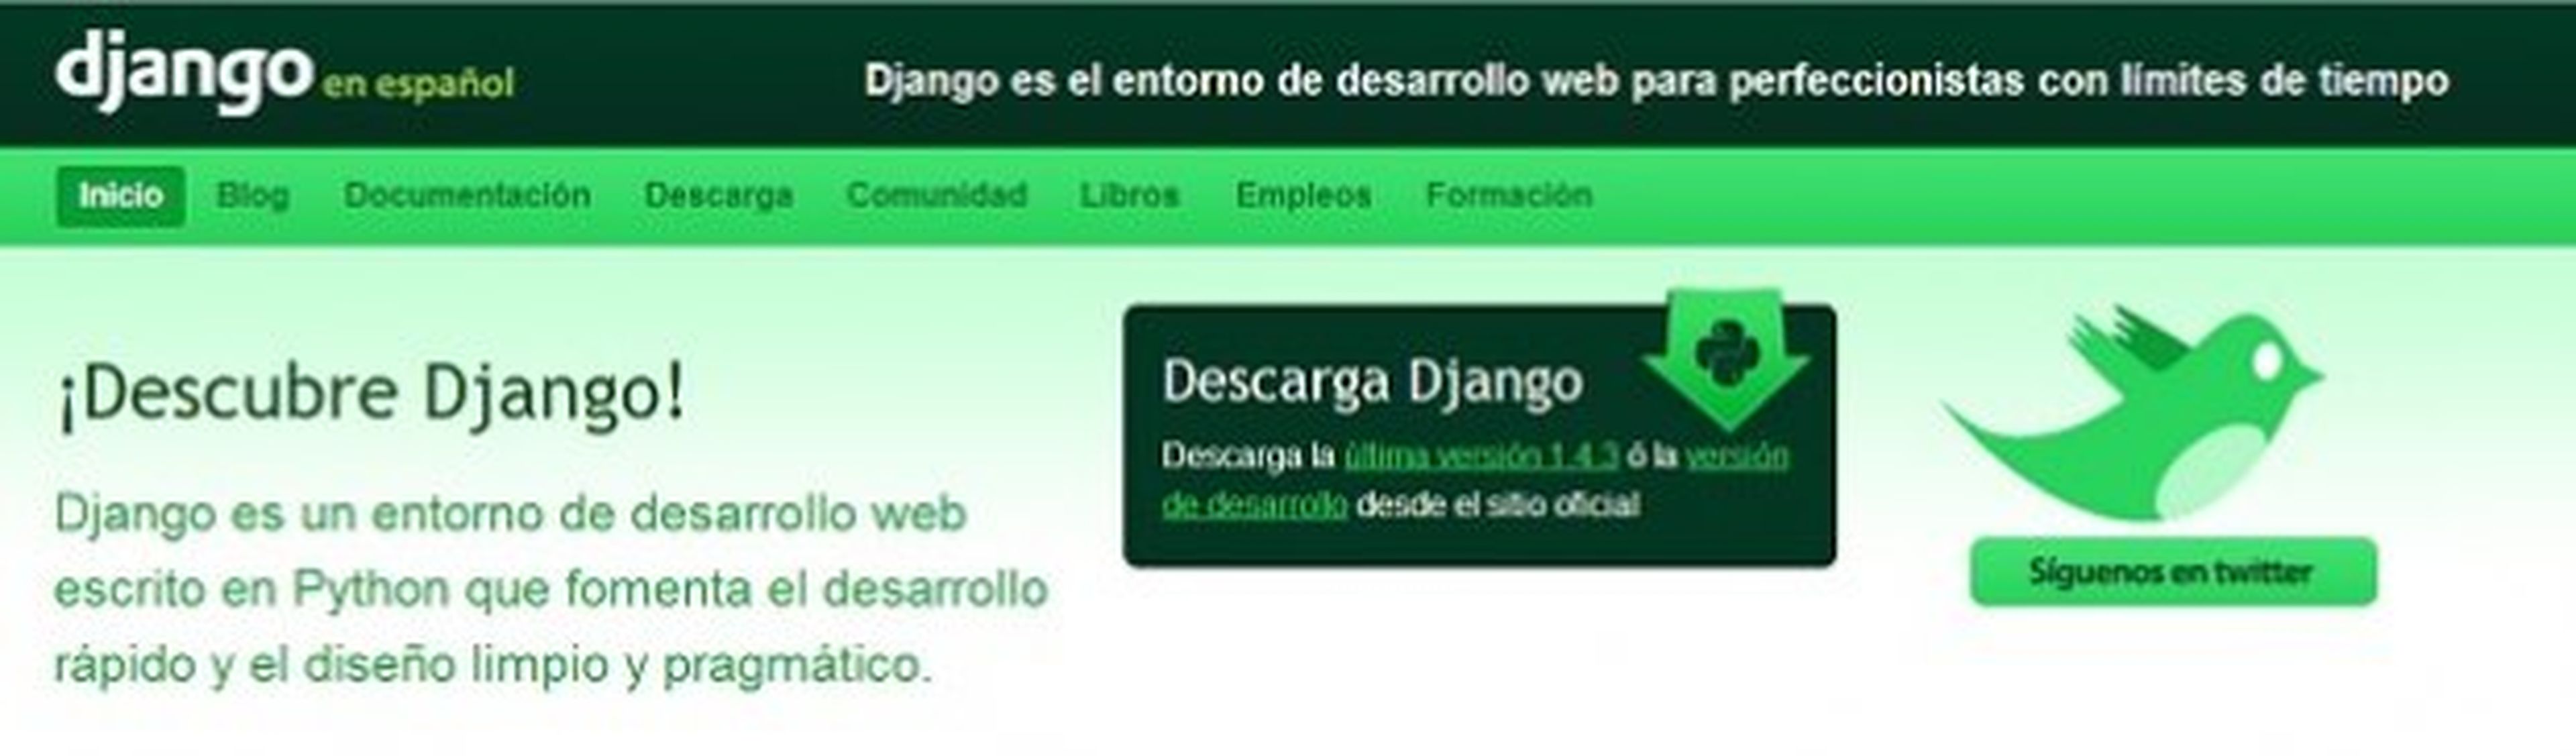 Django.es es un portal de ayuda en español